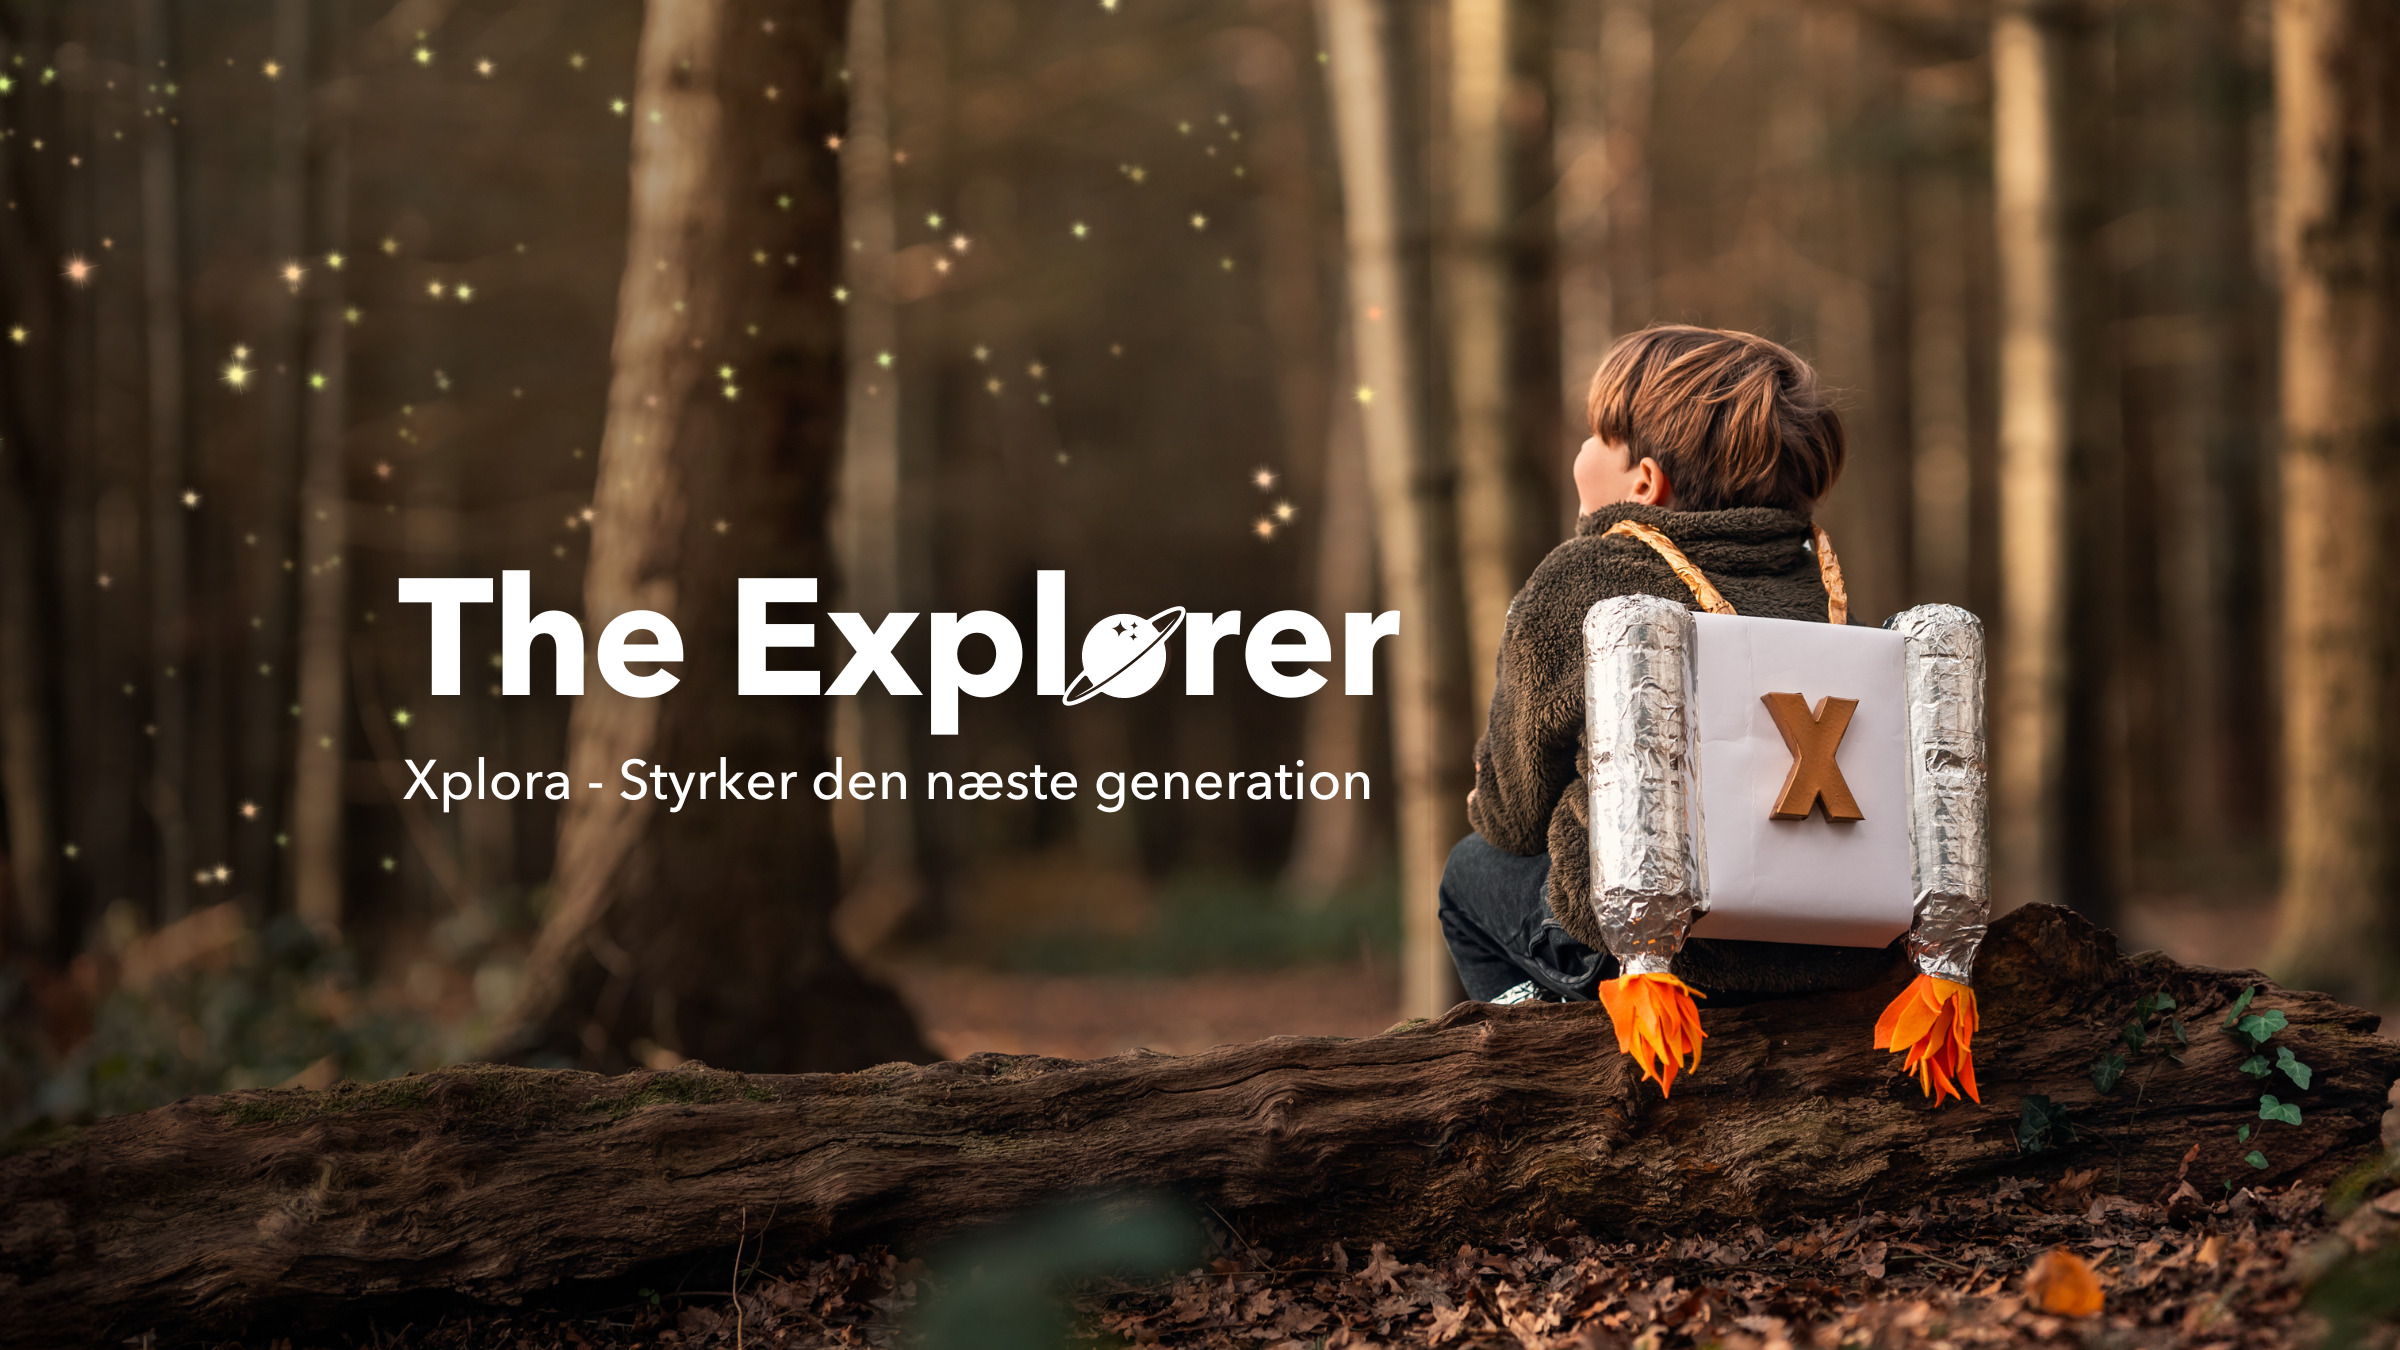 The Explorer - Xplora styrker den næste generation